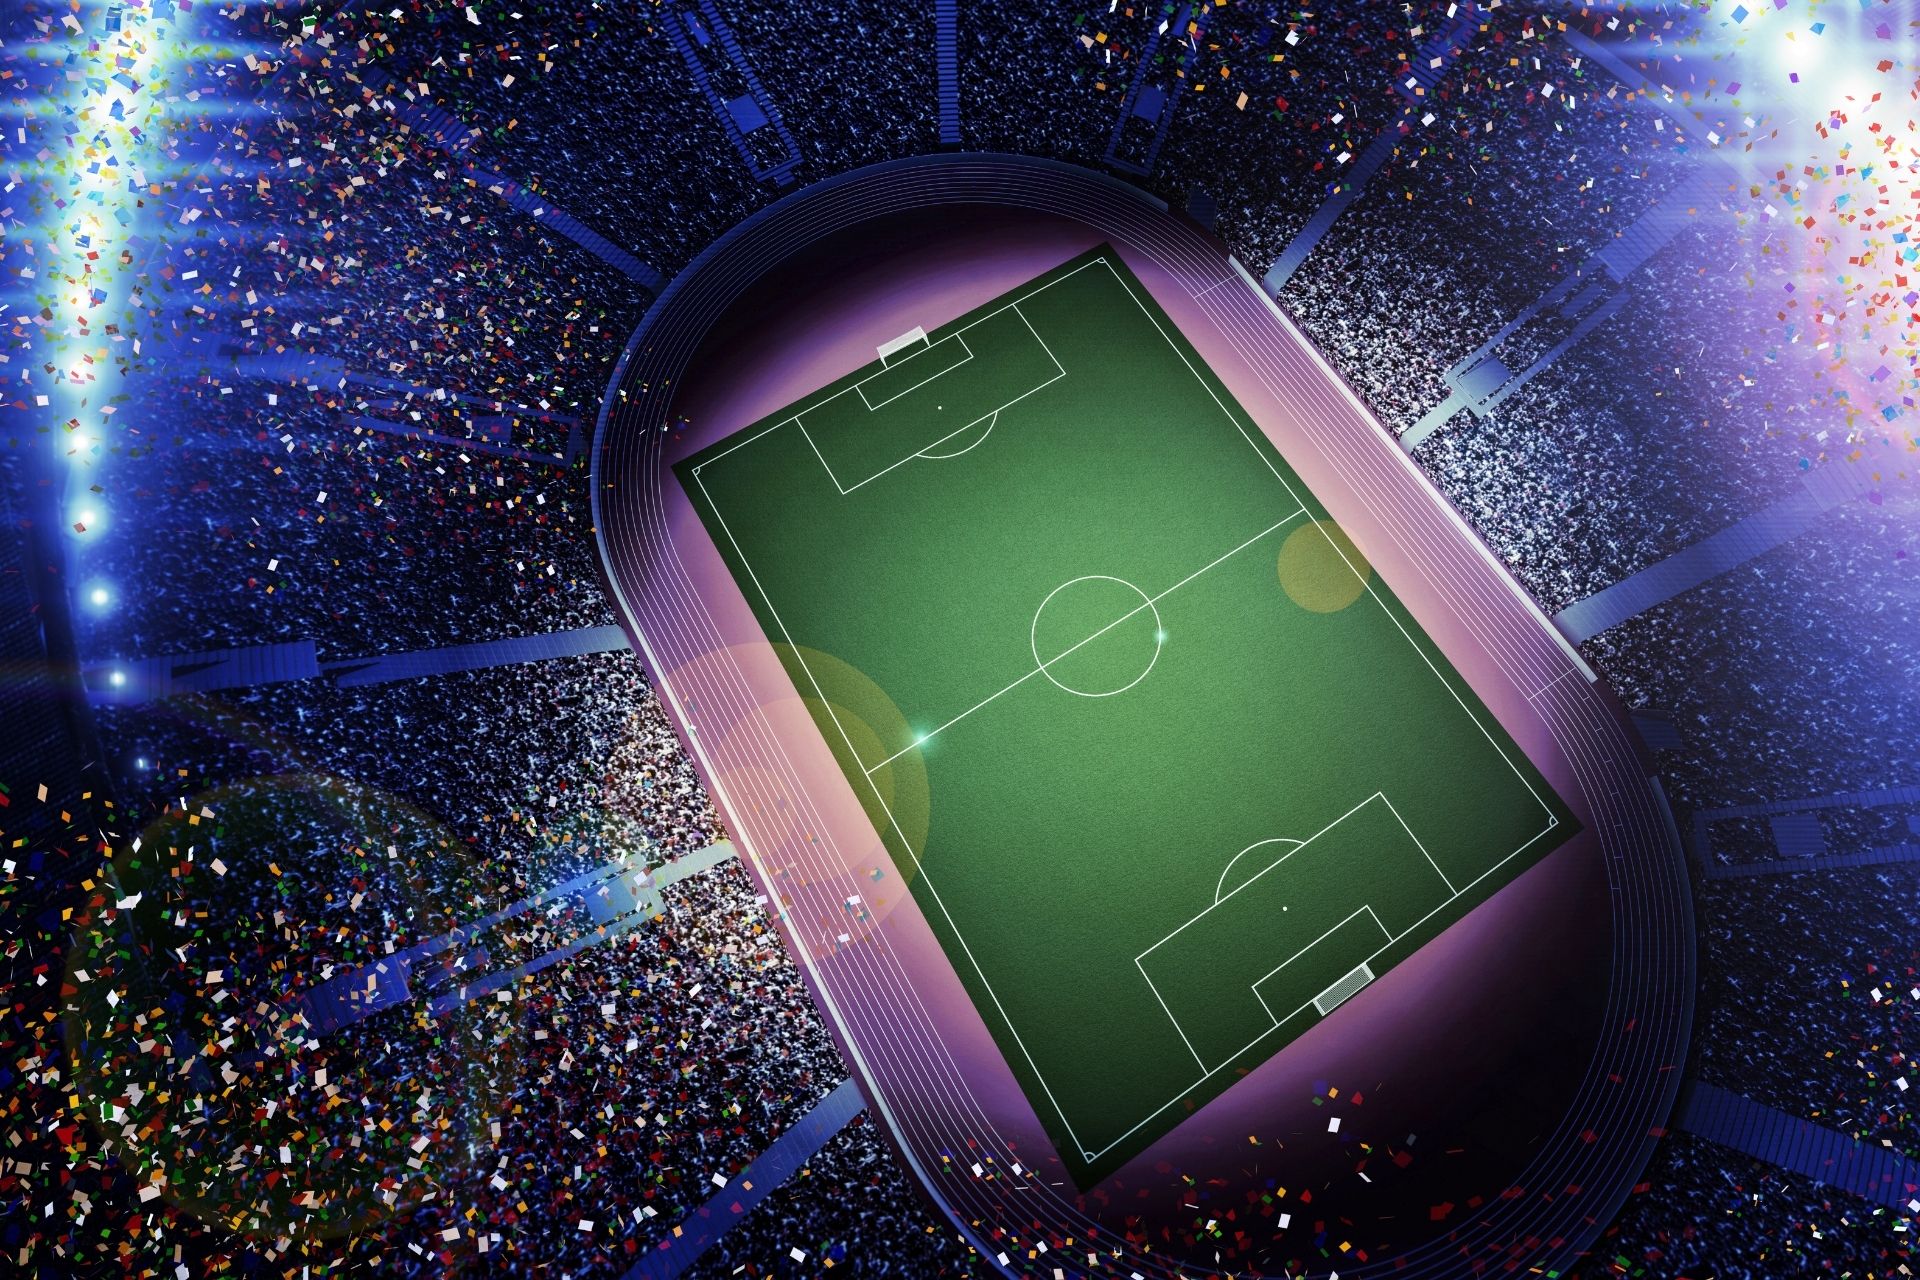 Dnia 2022-01-14 20:00 na stadionie Allianz Riviera miało miejsce spotkanie Nice - Nantes: 2-1